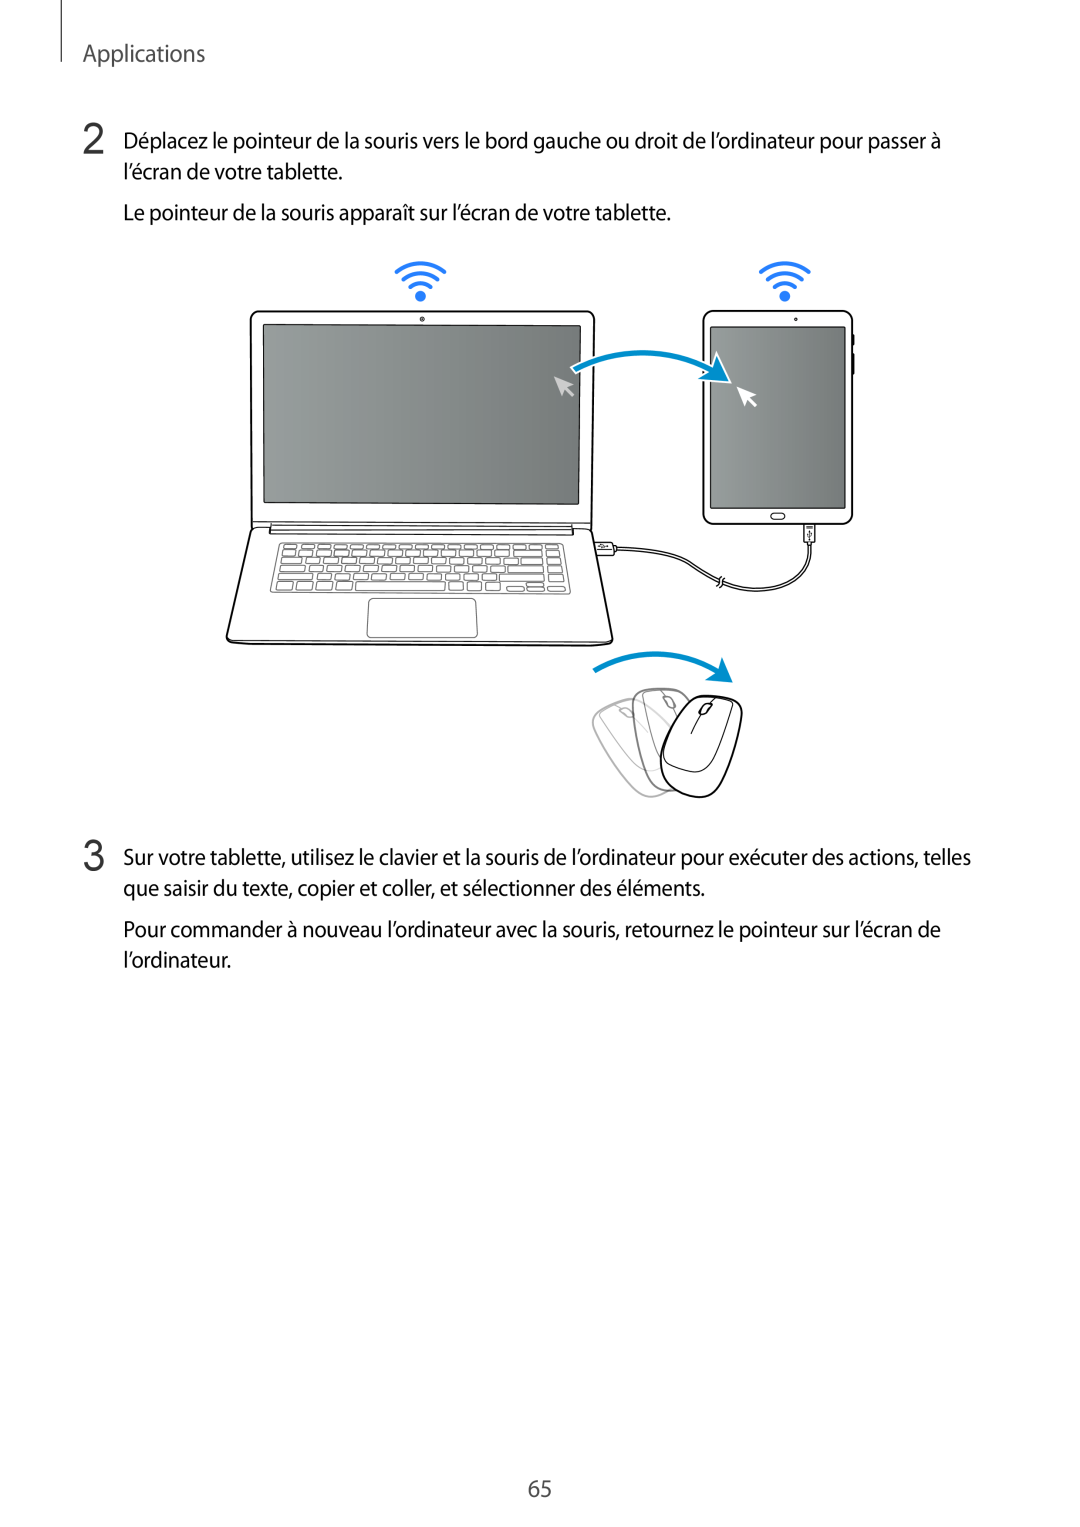 Samsung SM-T810NZKEXEF, SM-T810NZDEXEF manual Applications, Le pointeur de la souris apparaît sur l’écran de votre tablette 